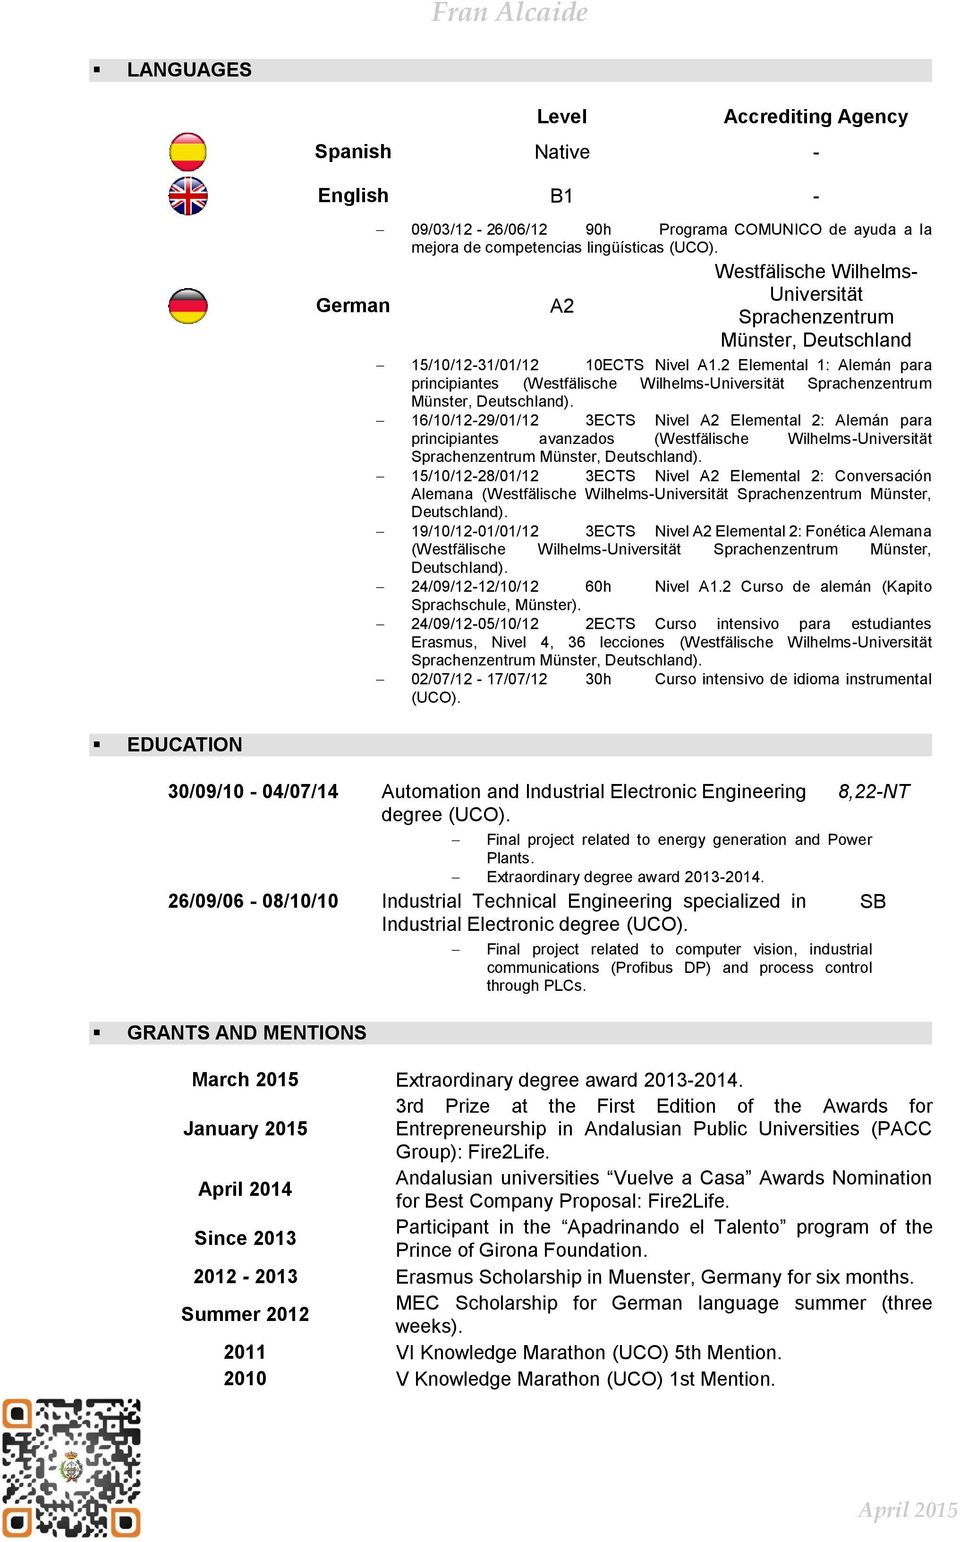 16/10/12-29/01/12 3ECTS Nivel A2 Elemental 2: Alemán para principiantes avanzados (Westfälische Wilhelms-Universität Sprachenzentrum Münster, Deutschland).